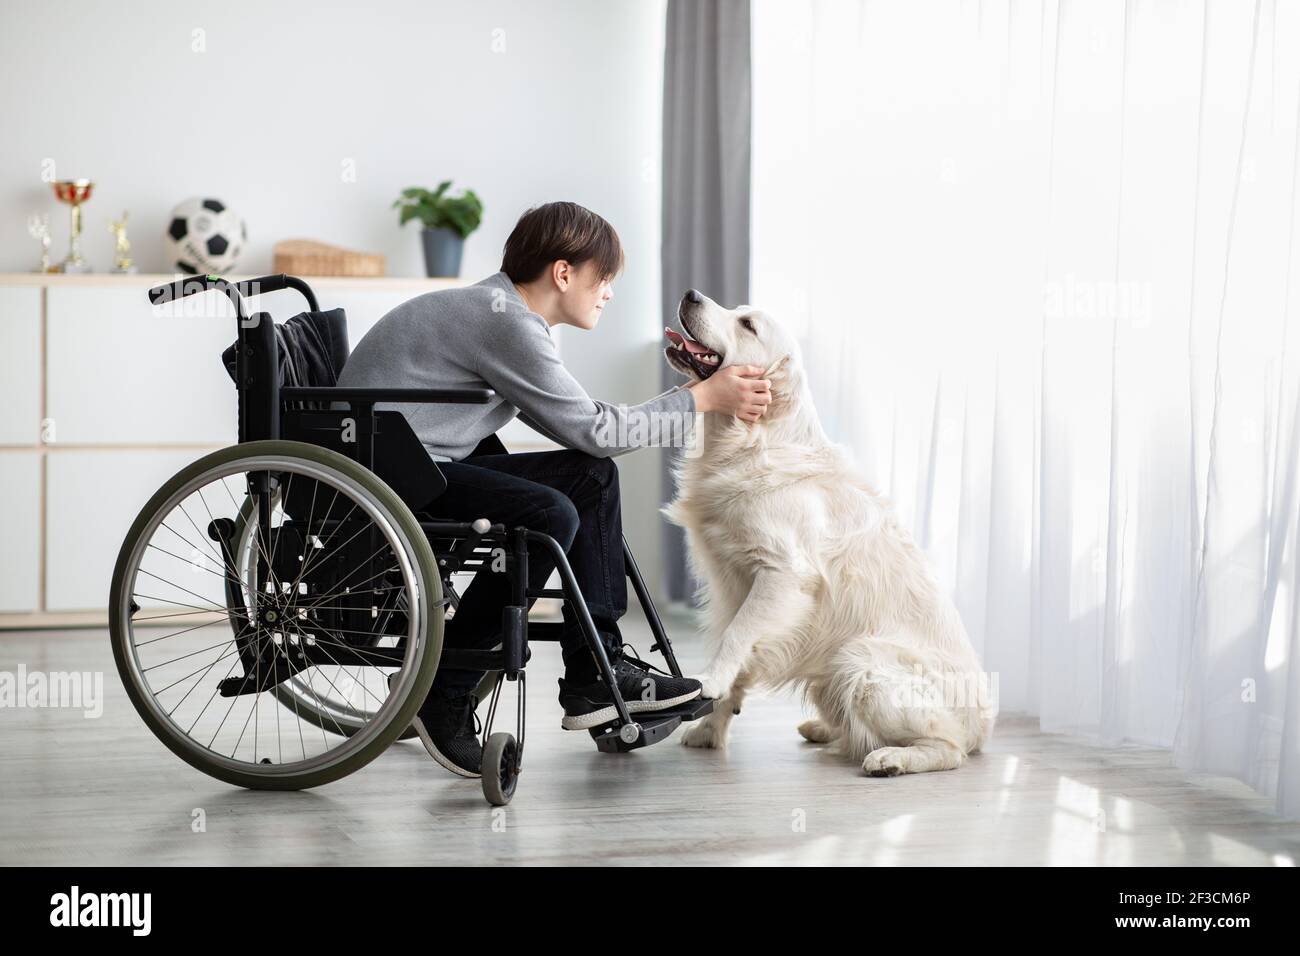 Un adolescent positif handicapé jouant avec son chien, pétant le châtiment doré à la maison Banque D'Images